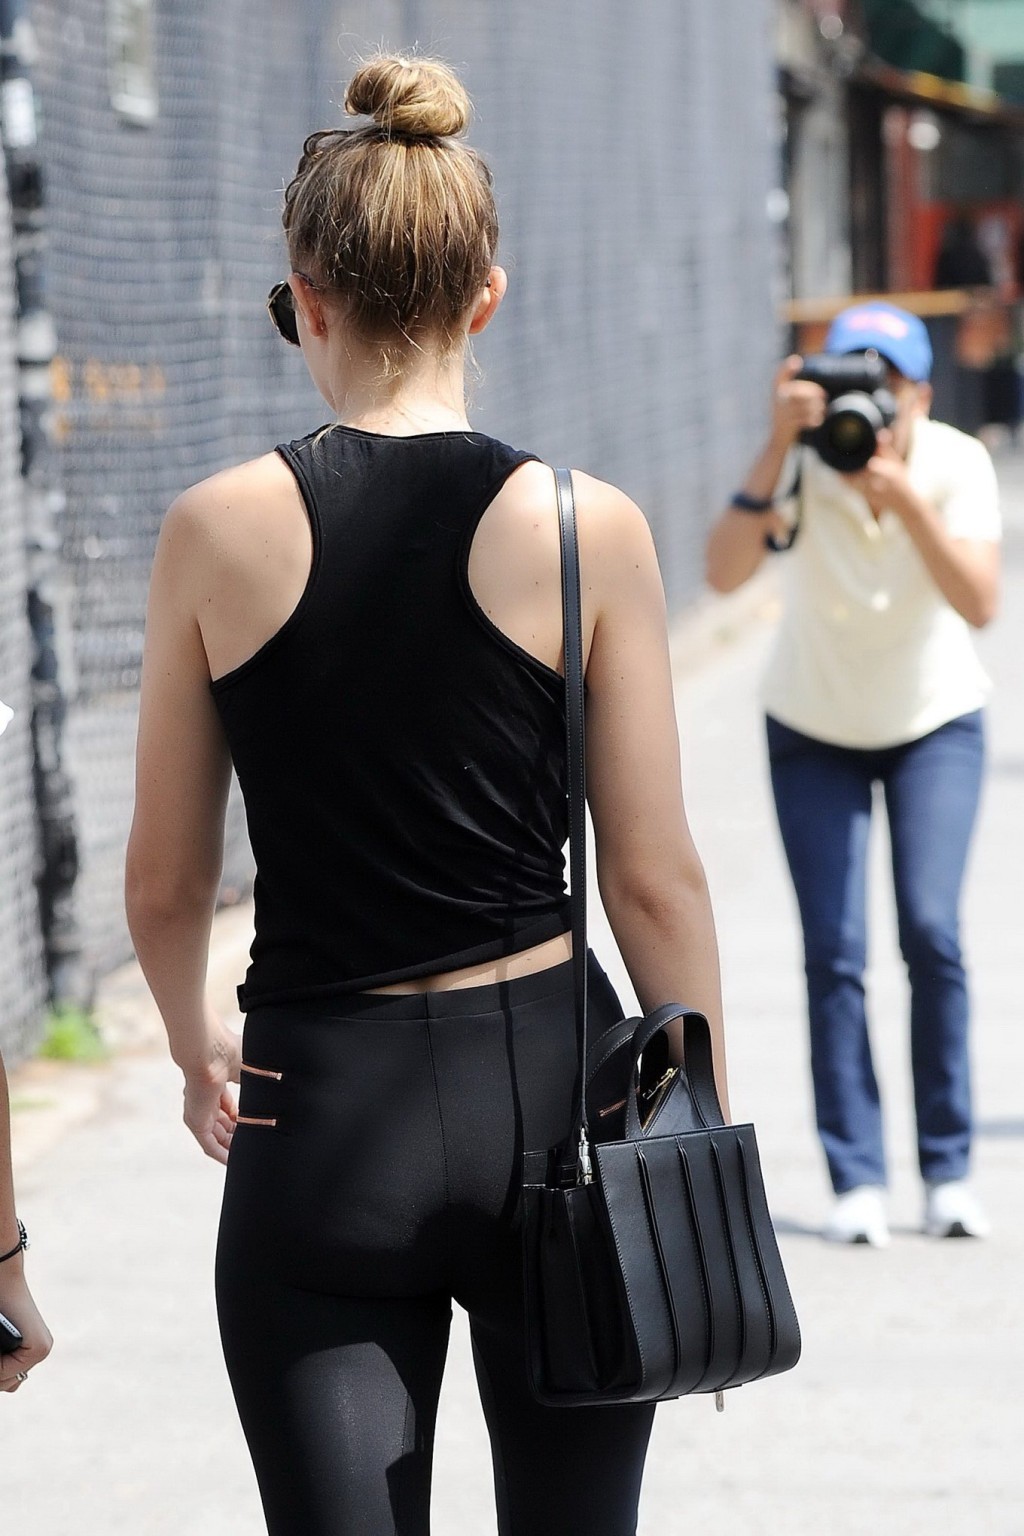 Gigi hadid mostrando su trasero en mallas negras fuera de nyc
 #75162619